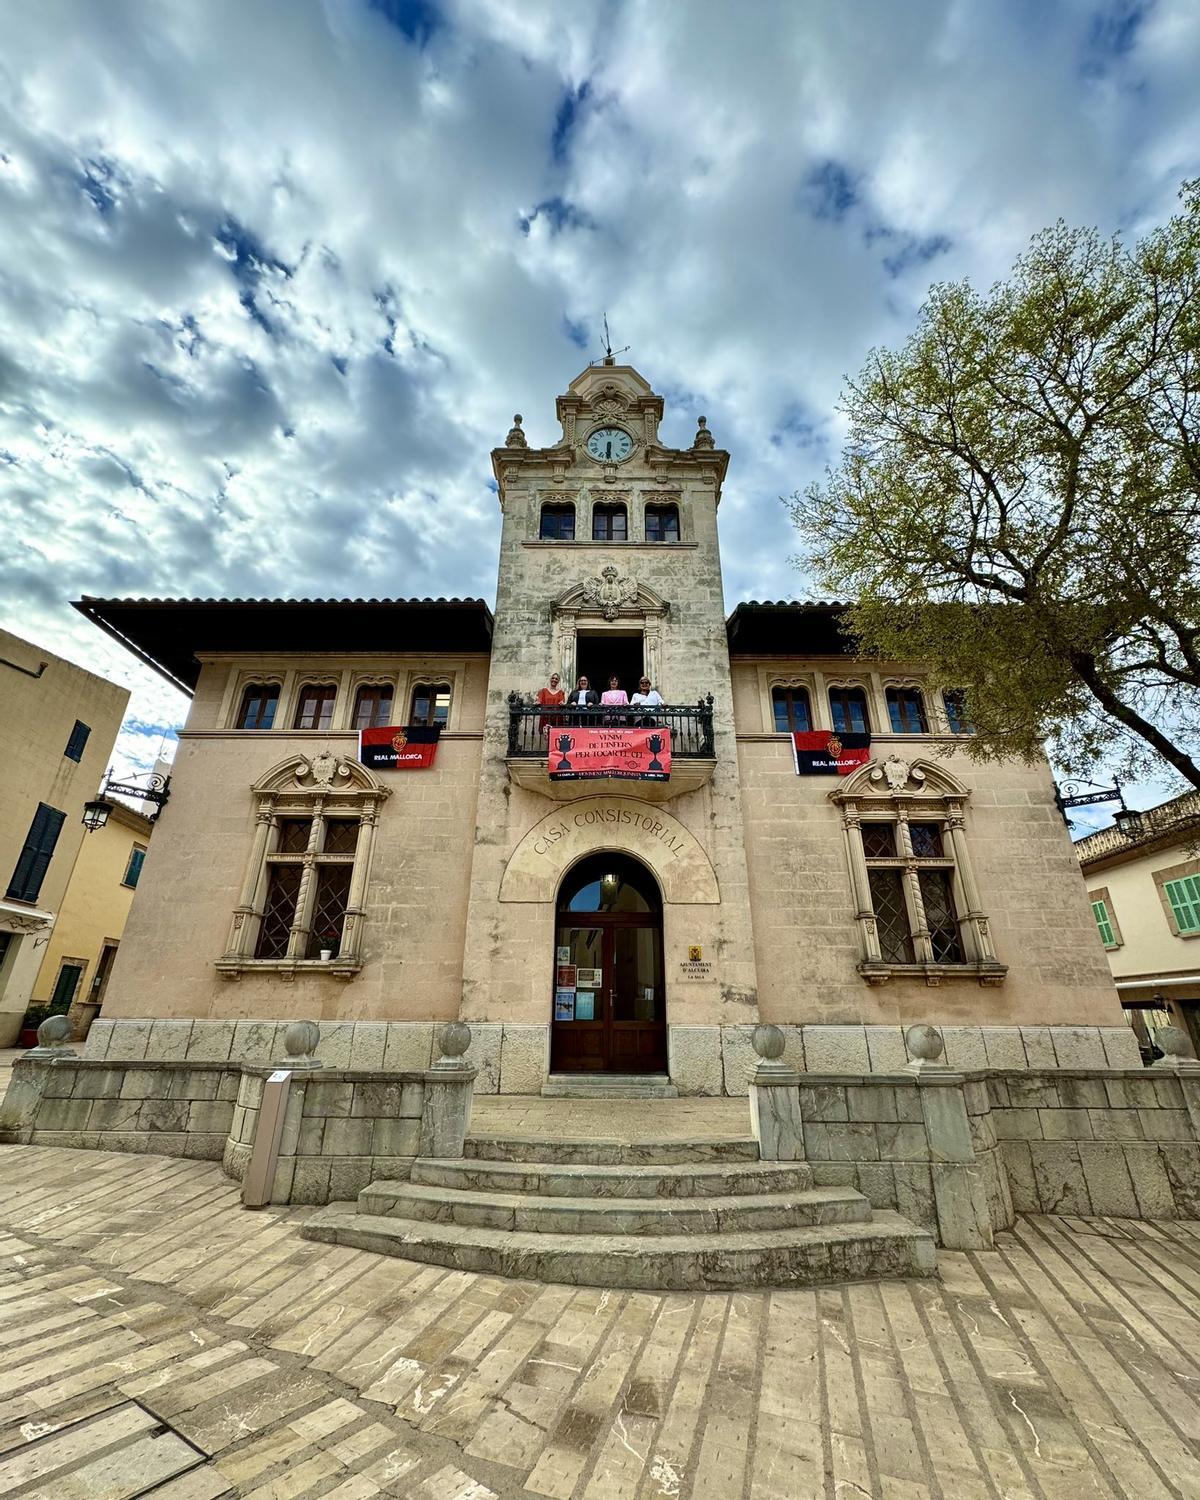 El Ajuntament de Alcúdia ha colgado las banderas del Mallorca en la fachada del consistorio.